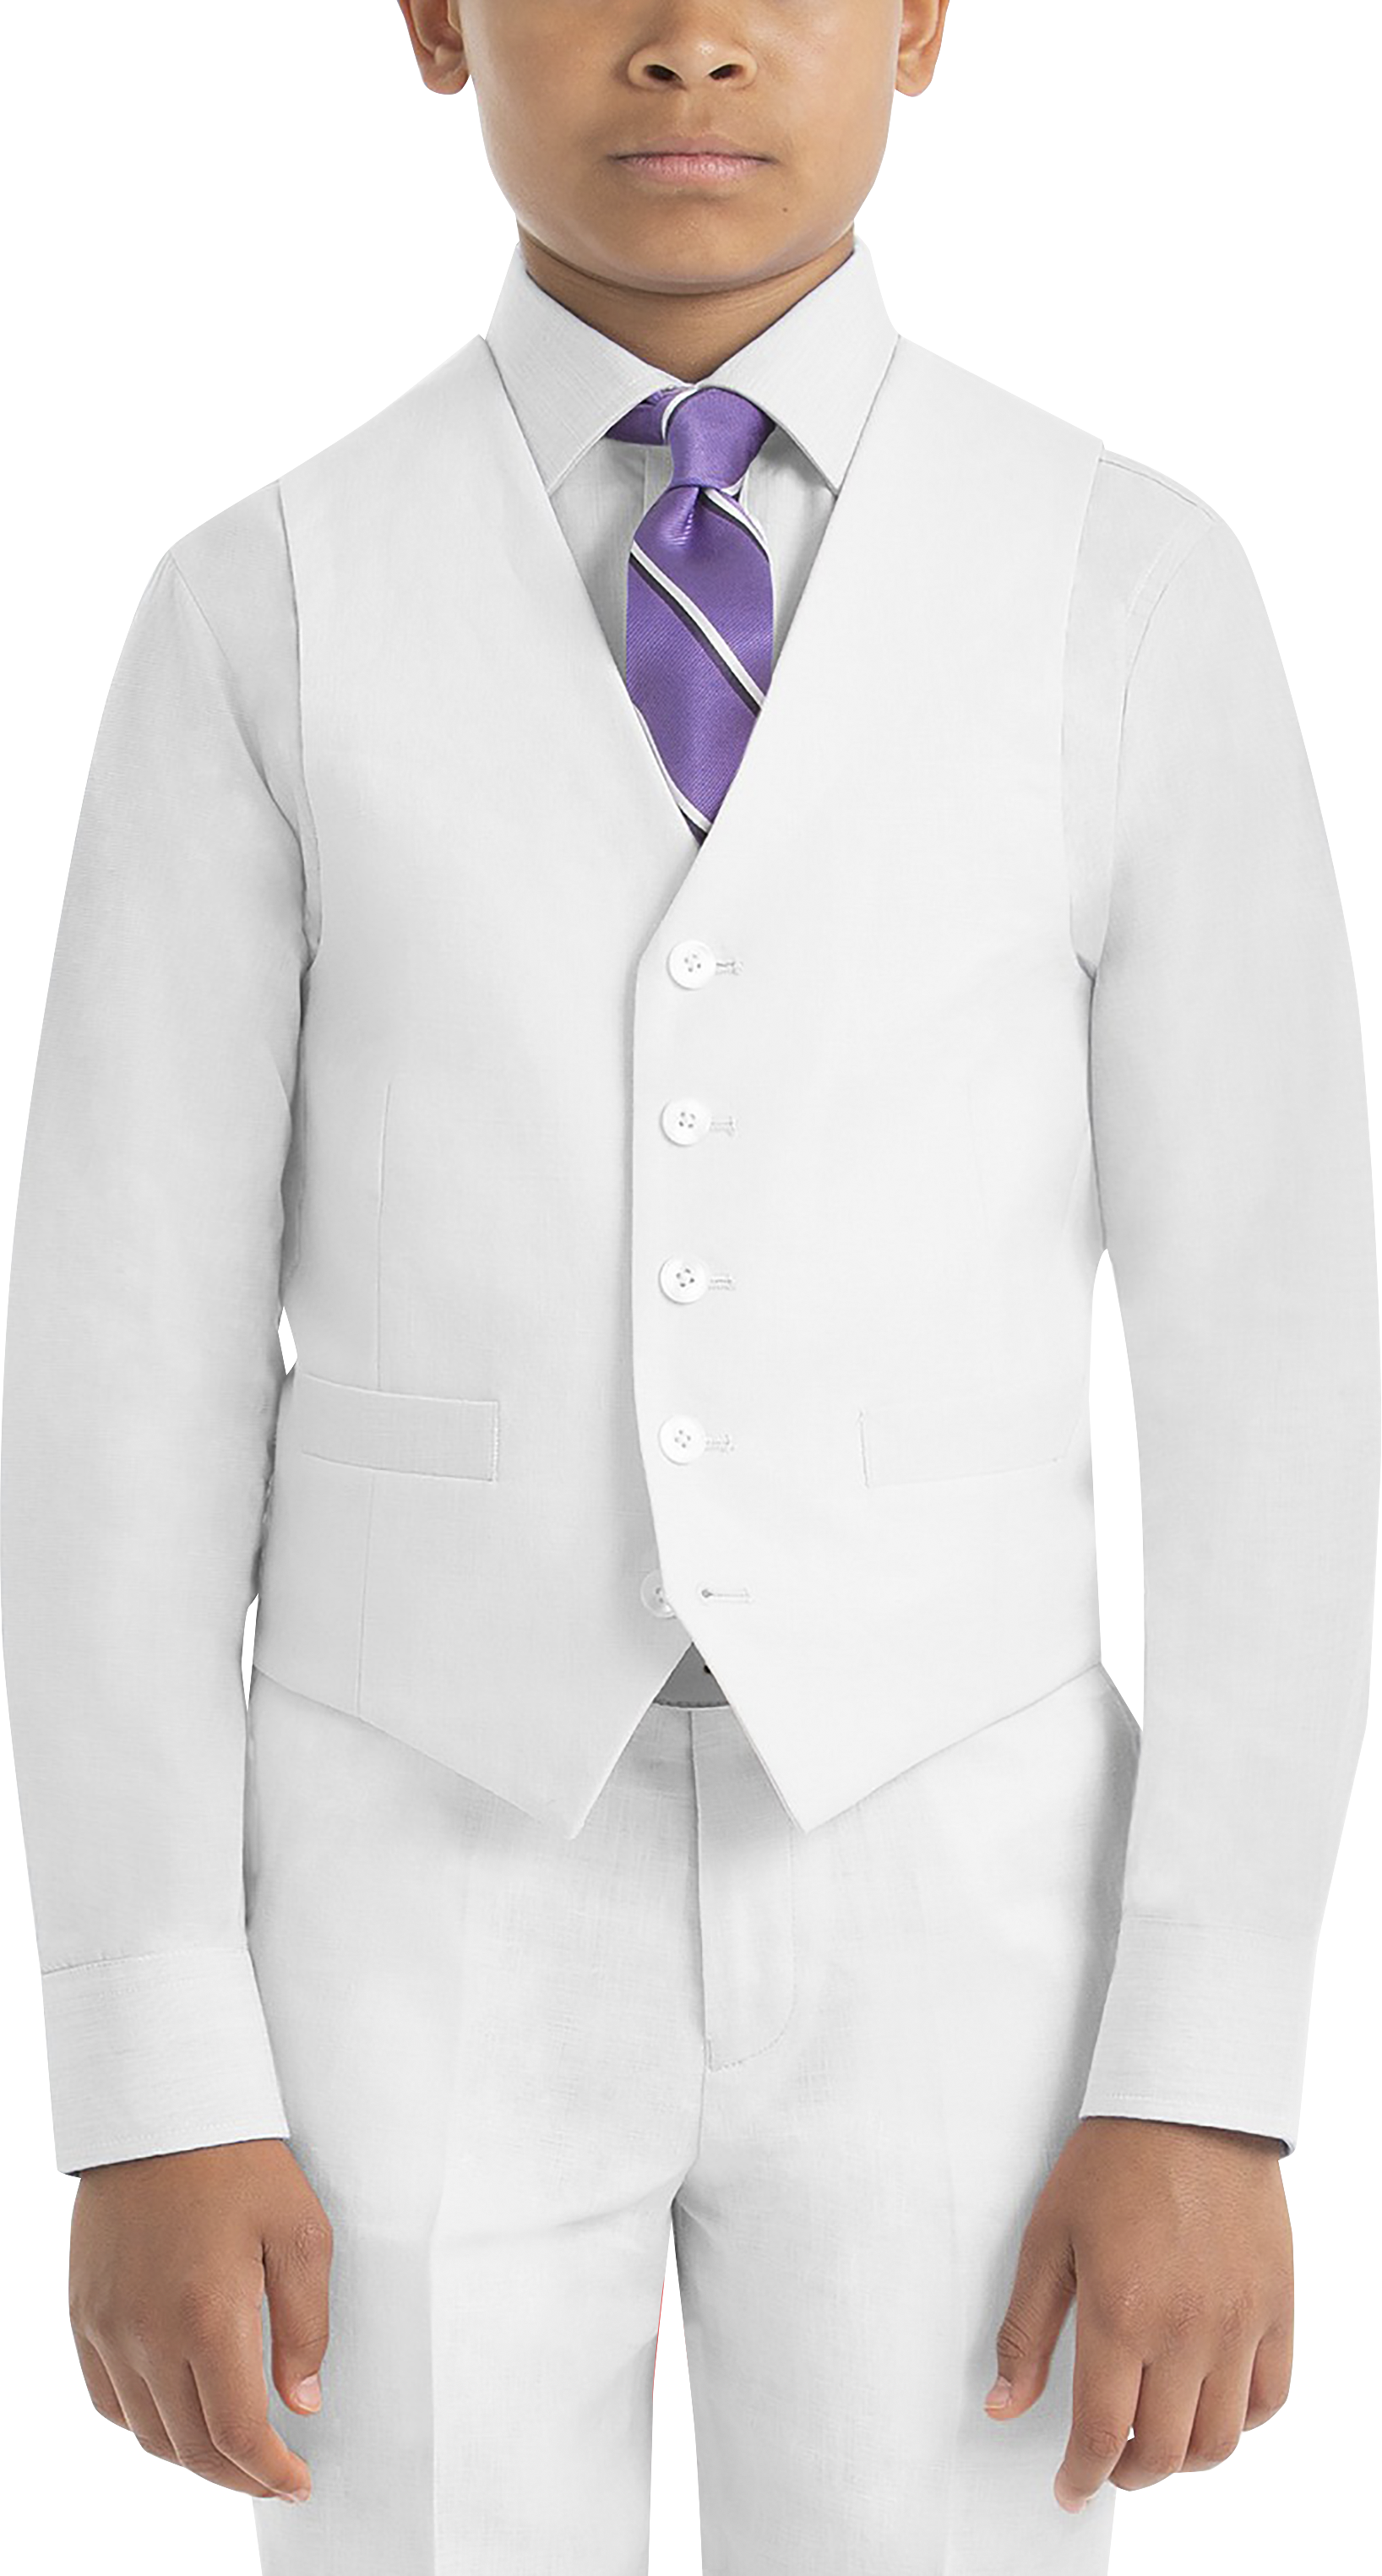 Mens Boys Suits & Tuxedos, Suits - Lauren By Ralph Lauren Boys (Sizes 4-7) Suit Separates Vest, White - Men's Wearhouse